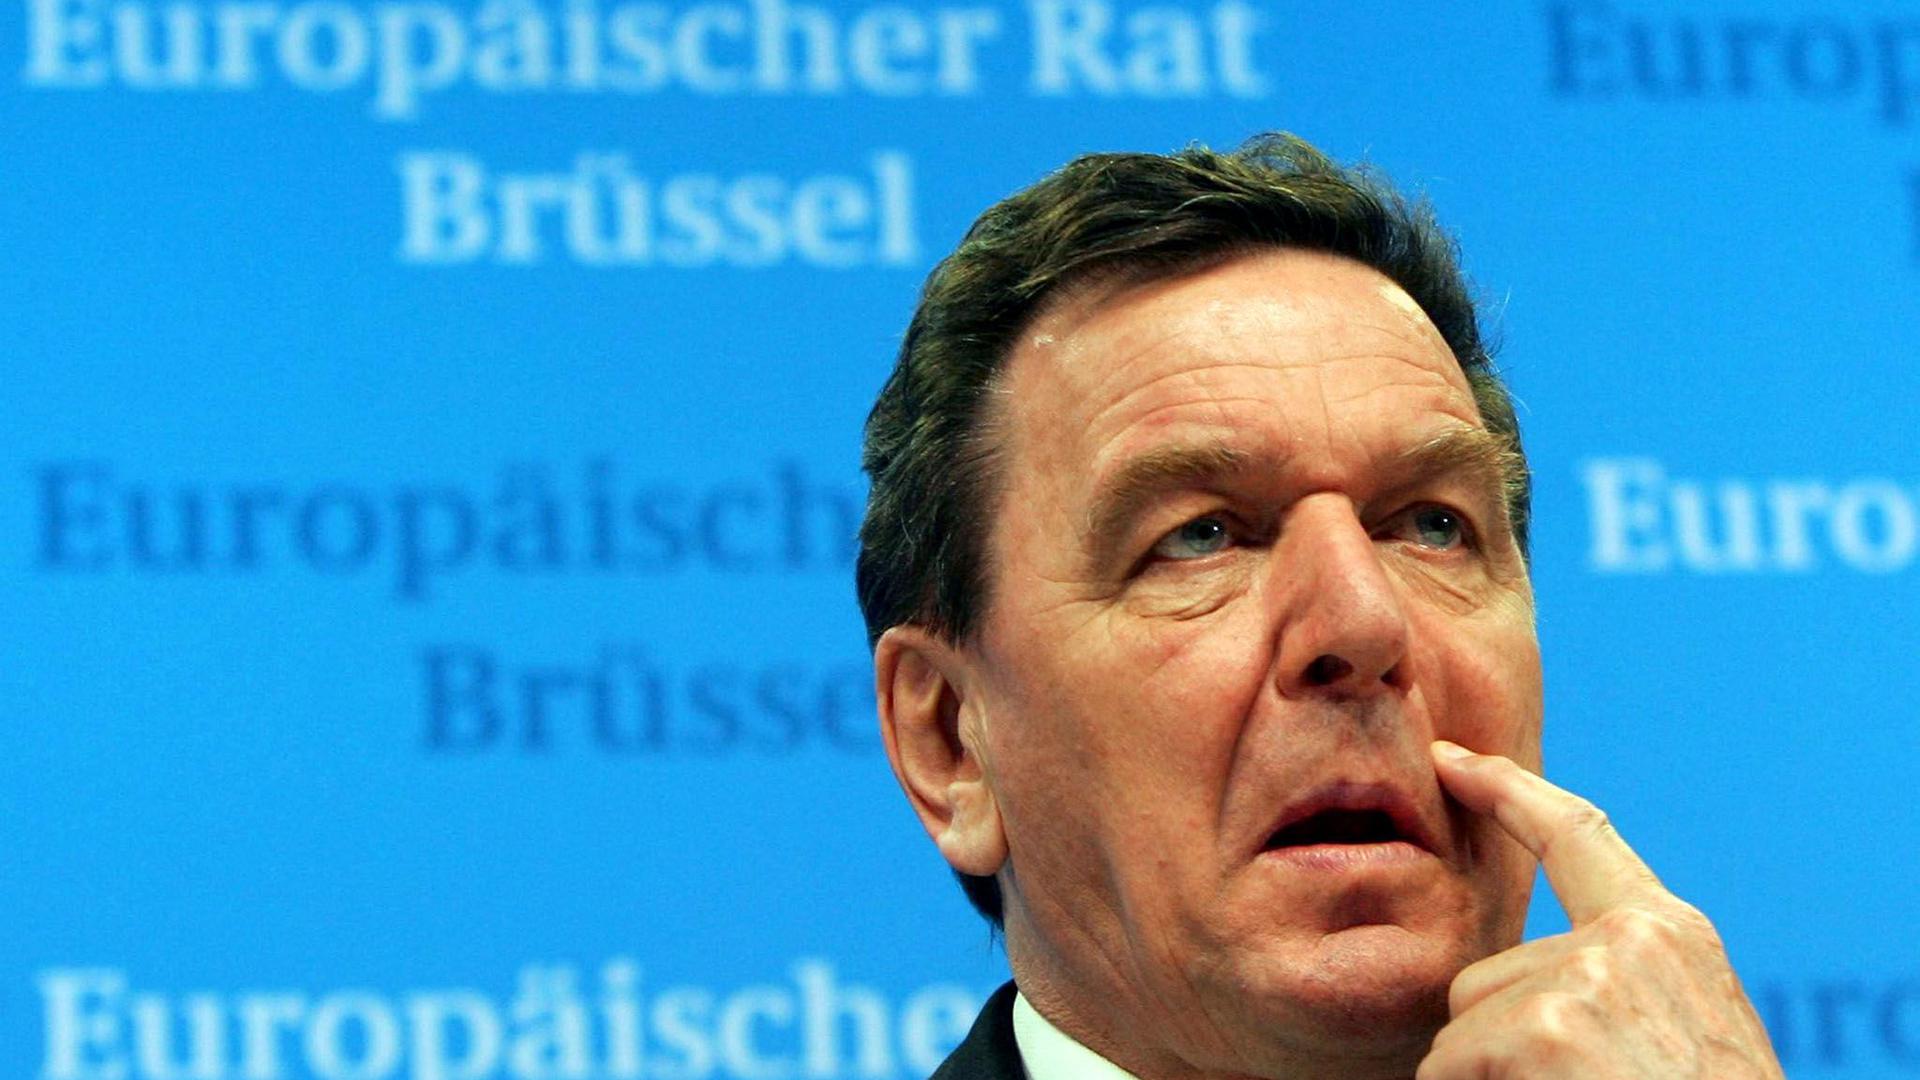 Der frühere Bundeskanzler Gerhard Schröder steht seit Monaten wegen seinen Verbindungen zu russischen Energiefirmen und seiner Nähe zu Russlands Präsident Putin in der Kritik.